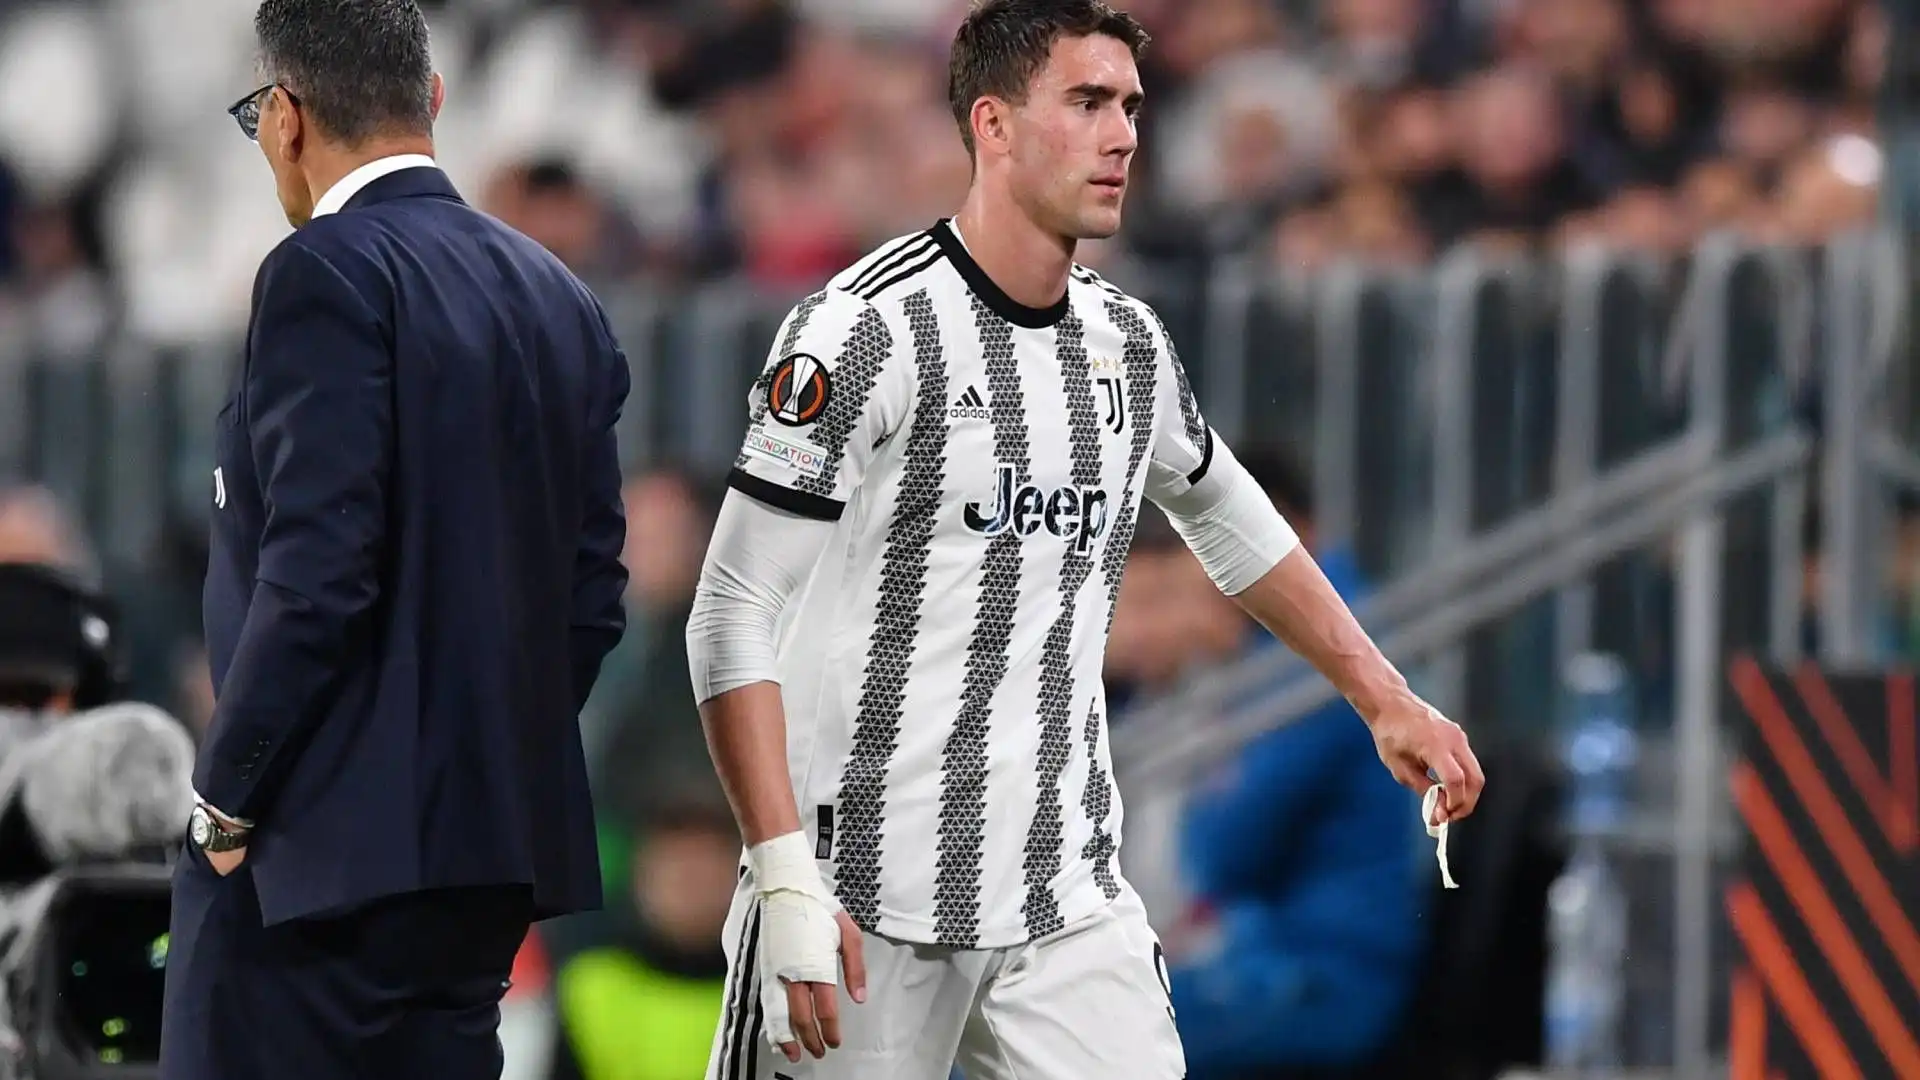 Il centrocampista francese è stato l'ultimo a entrare nella Juventus dopo che Milik era subentrato a Vlahovic, deludente questa sera